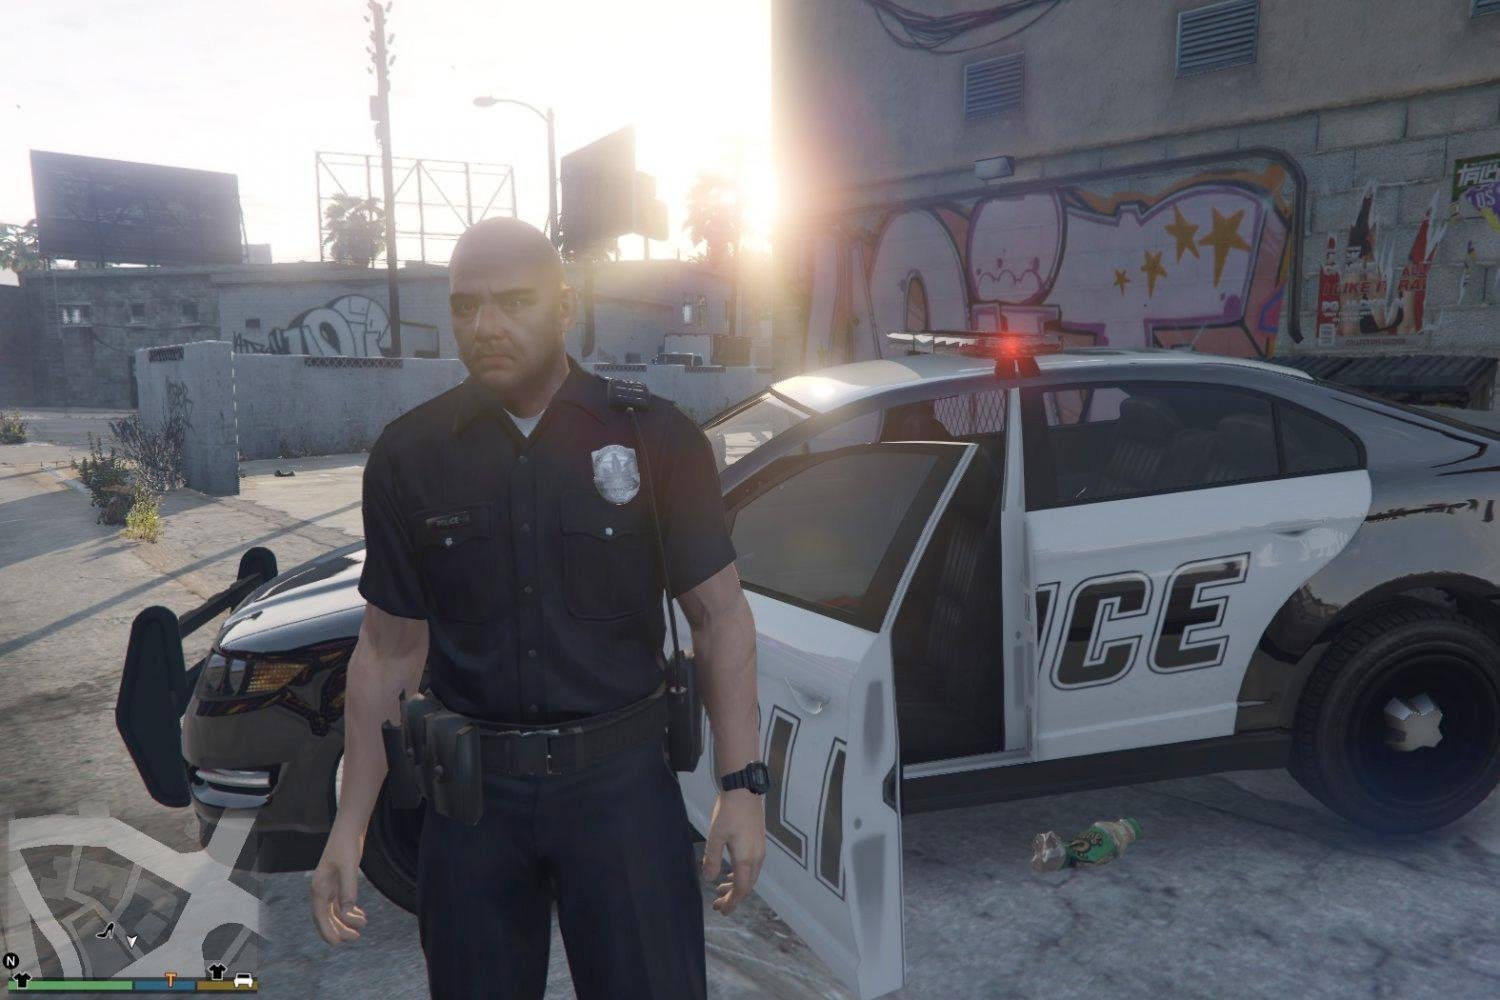 GTA 5 Mods - Grand Theft Auto V PC Mods